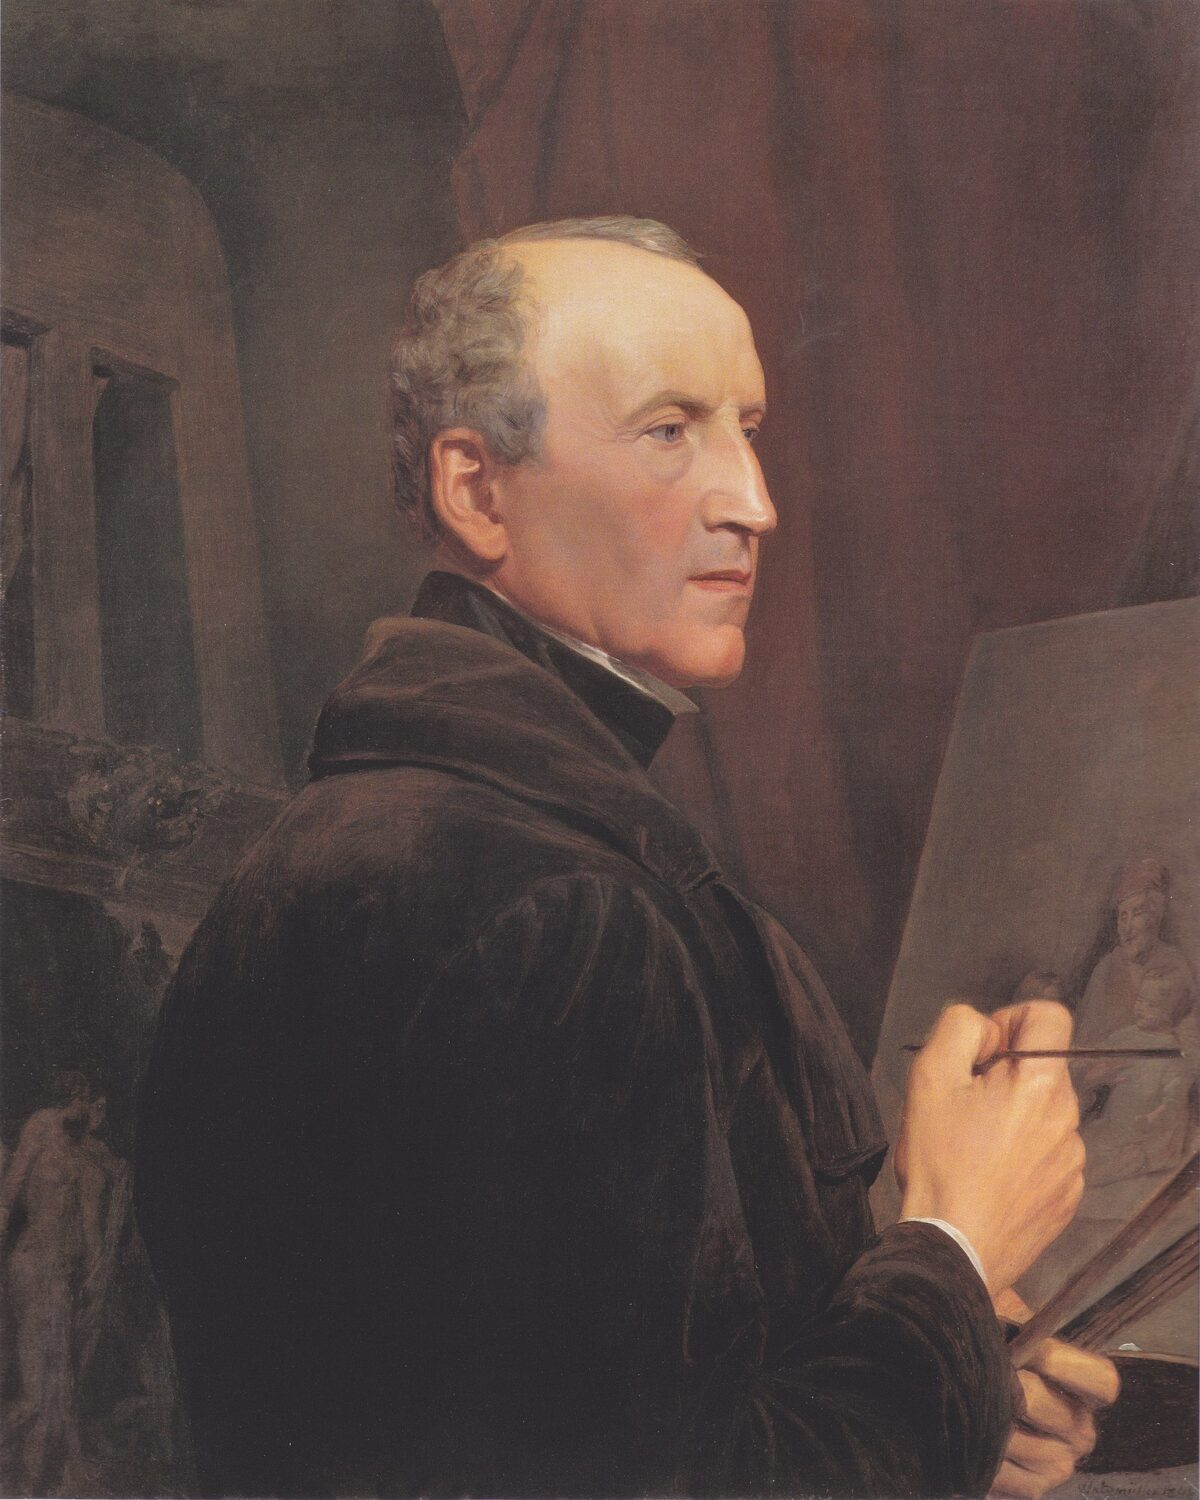 Tác phẩm “Self-Portrait at the Easel” (Chân dung tự họa tại giá vẽ) của họa sĩ Ferdinand Georg Waldmüller, năm 1848. Tranh sơn dầu trên vải canvas; kích thước 69 1/2 inch x 56 1/2 inch. (Ảnh: Tài sản công)